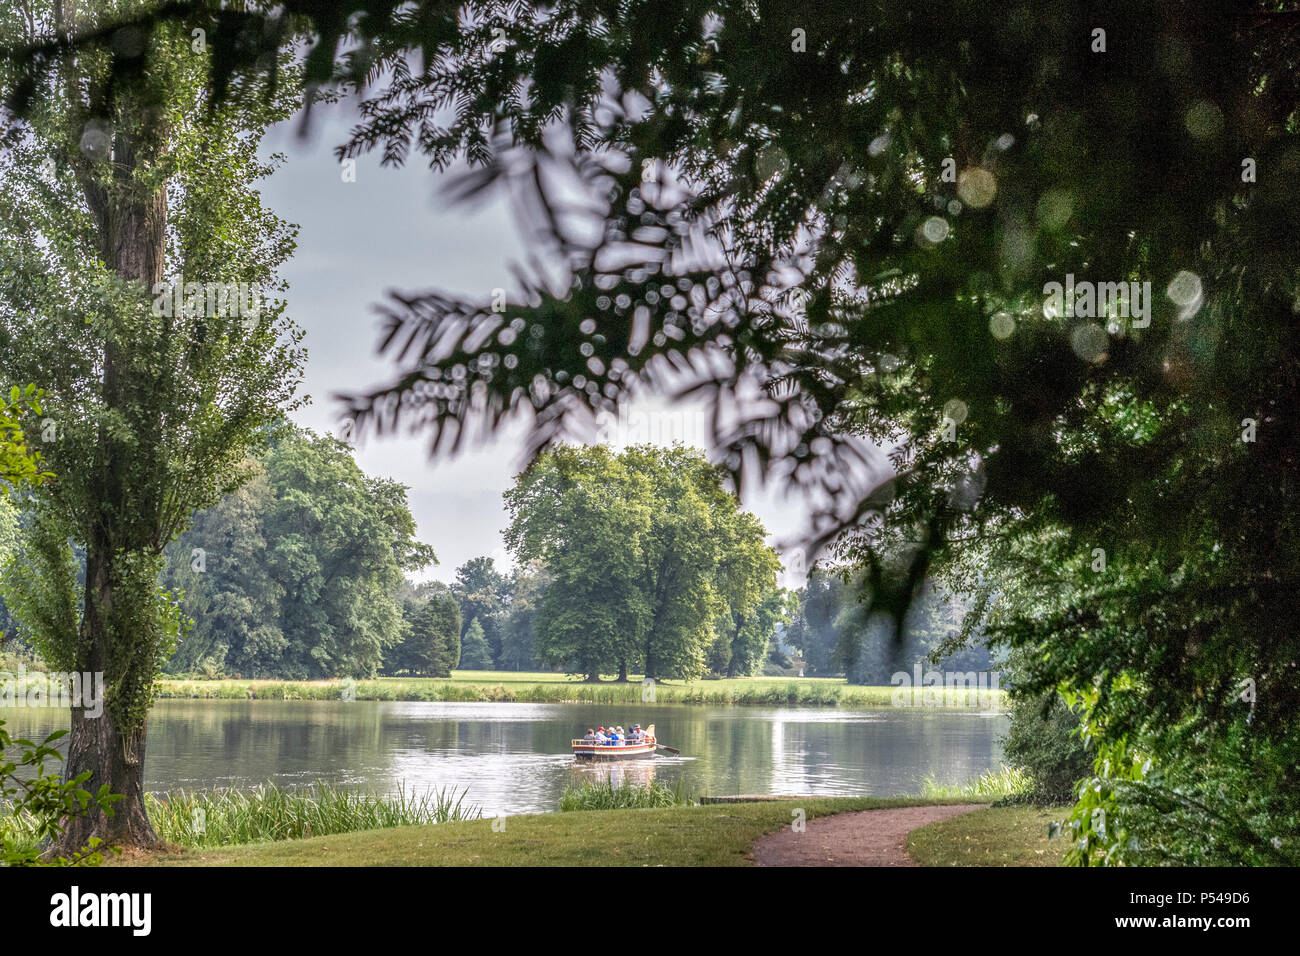 28.07.2016 - Woerlitz, Sachsen-Anhalt, Deutschland - Das Gartenreich Dessau-Woerlitz ist Weltkulturerbe der UNESCO. Rund um den See sowie in den Kanaelen koennen Gondelfahrten gemacht werden. Stock Photo